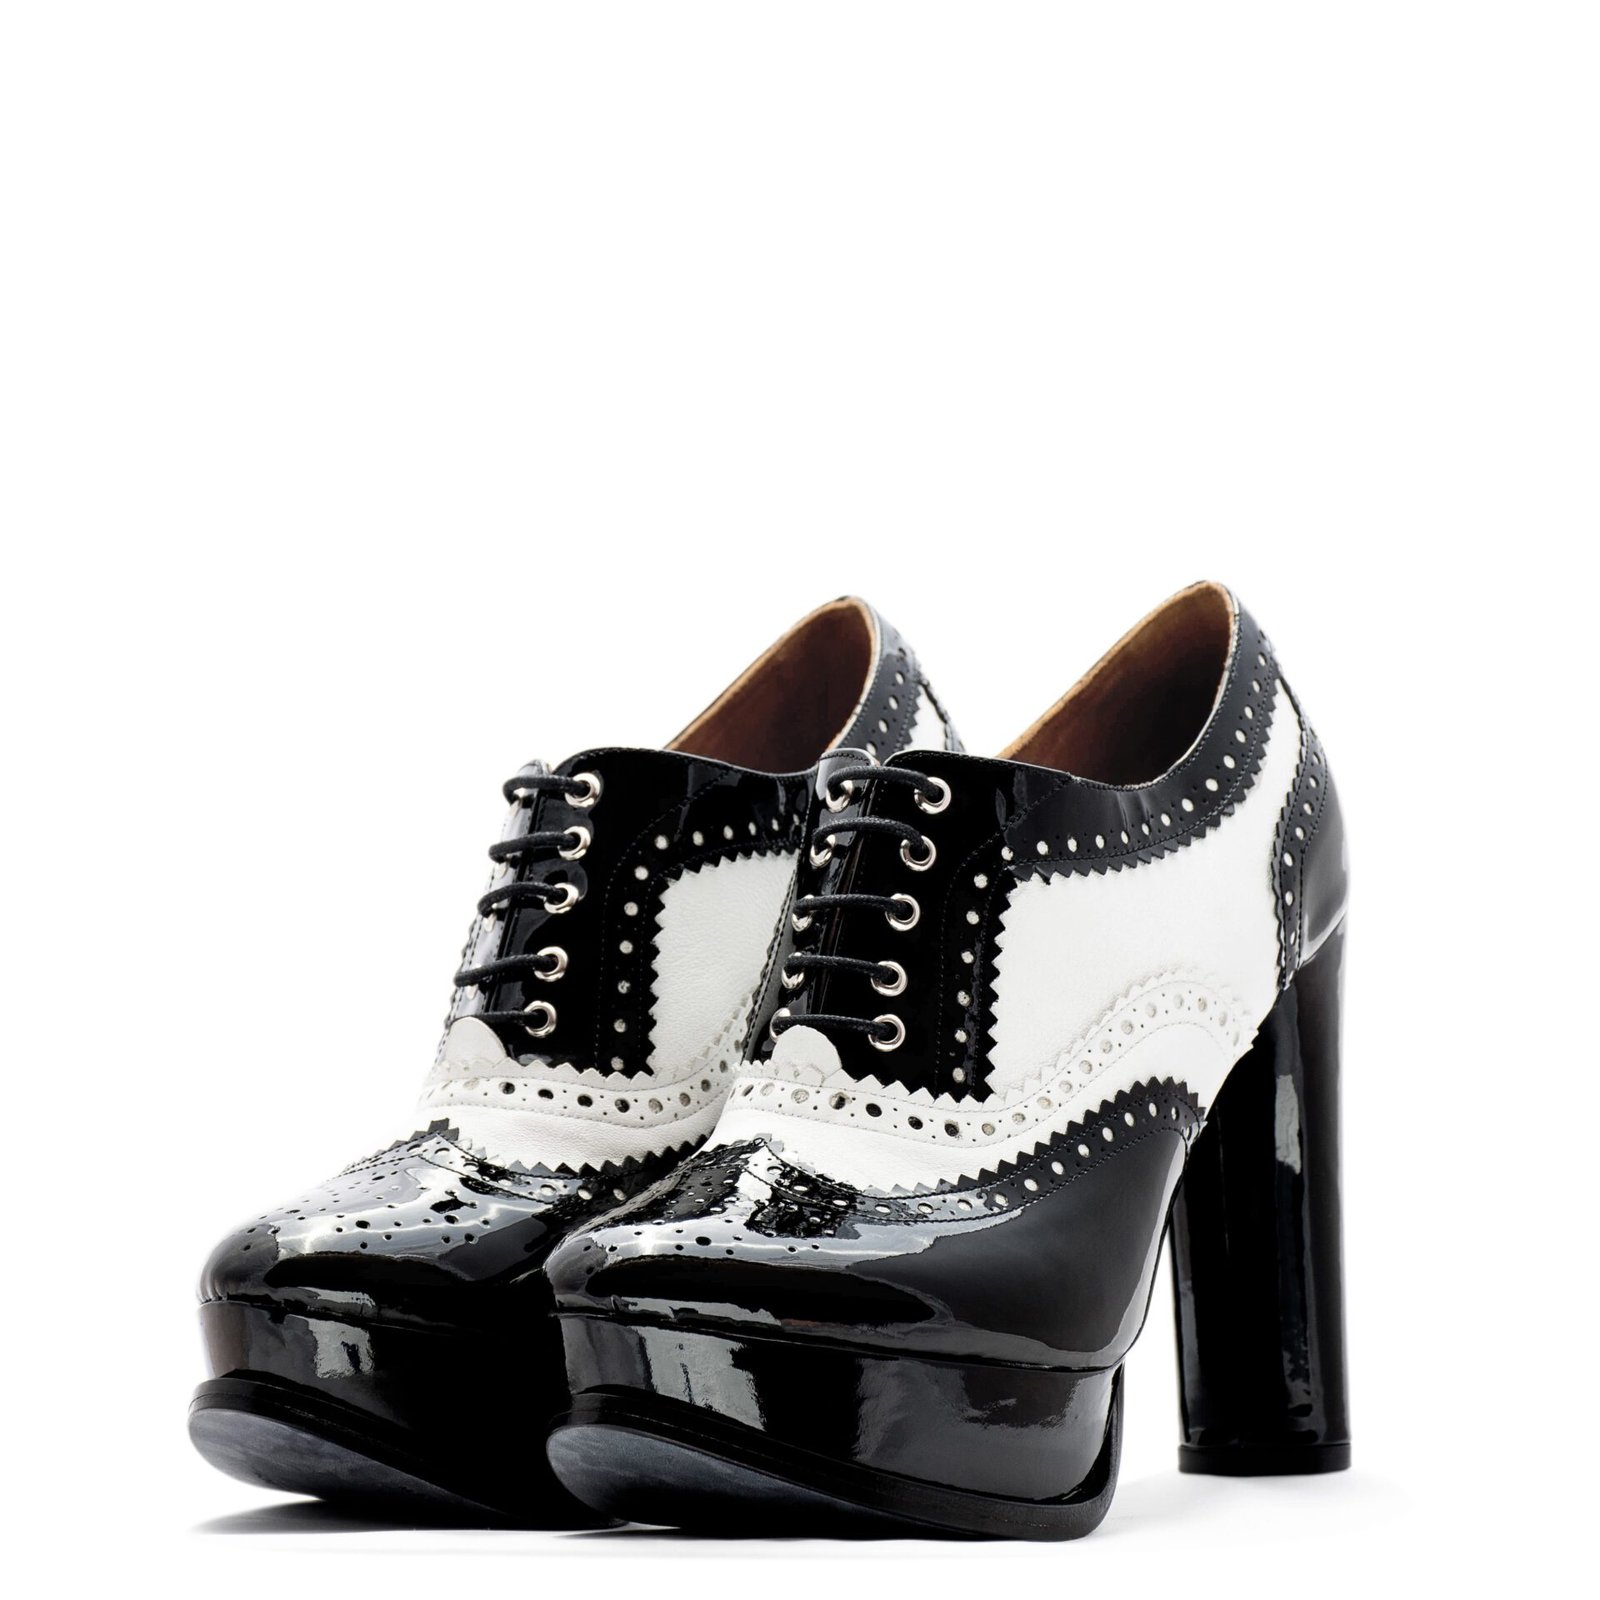 Black & White Oxford Heels for Men & women